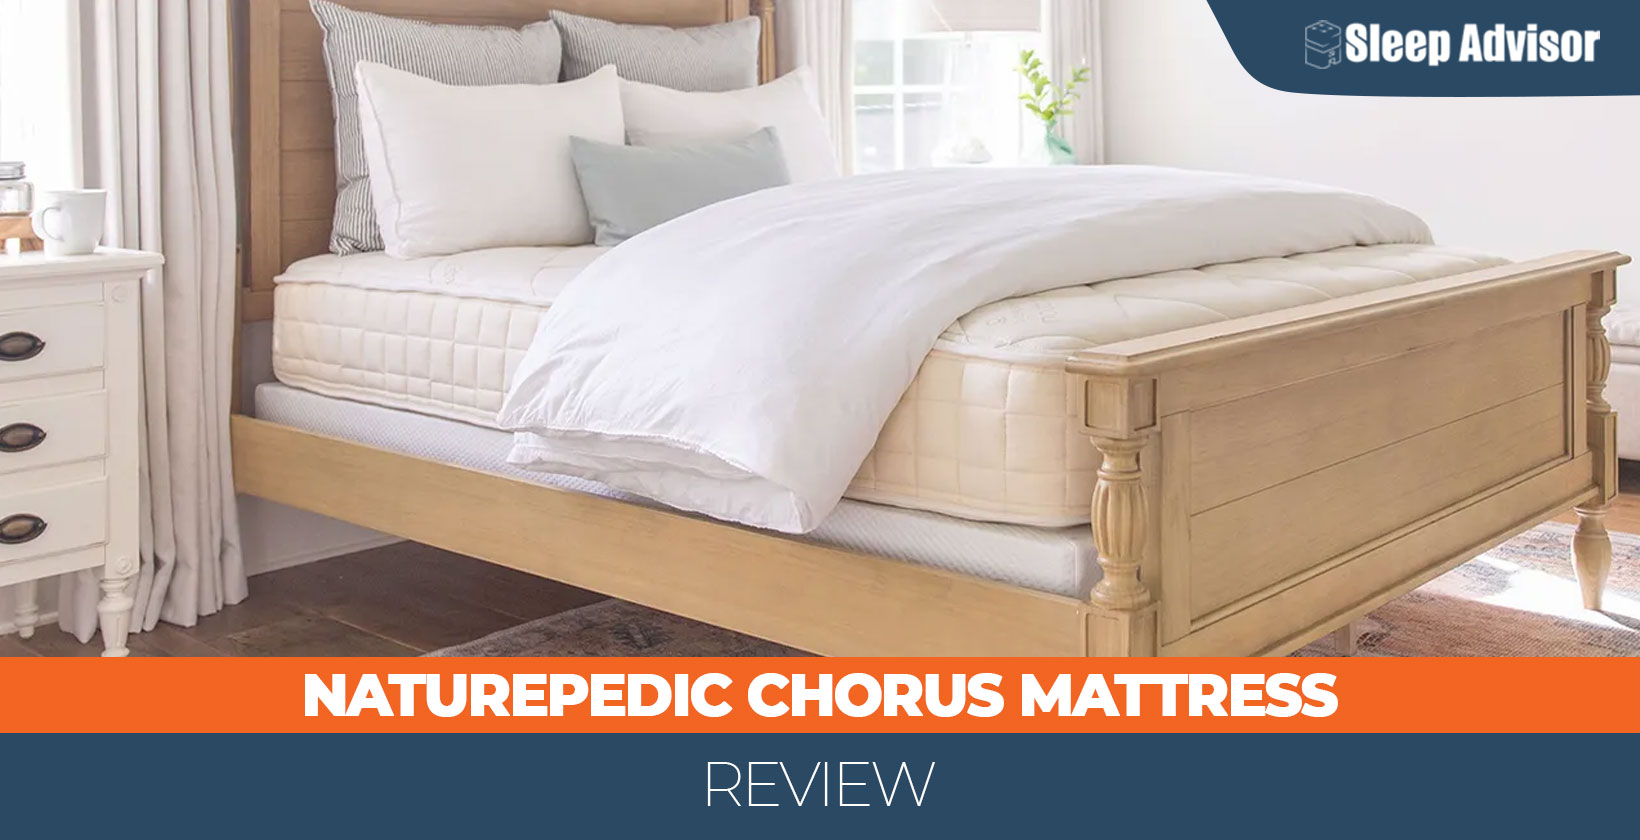 Naturepedic Chorus Mattress Review